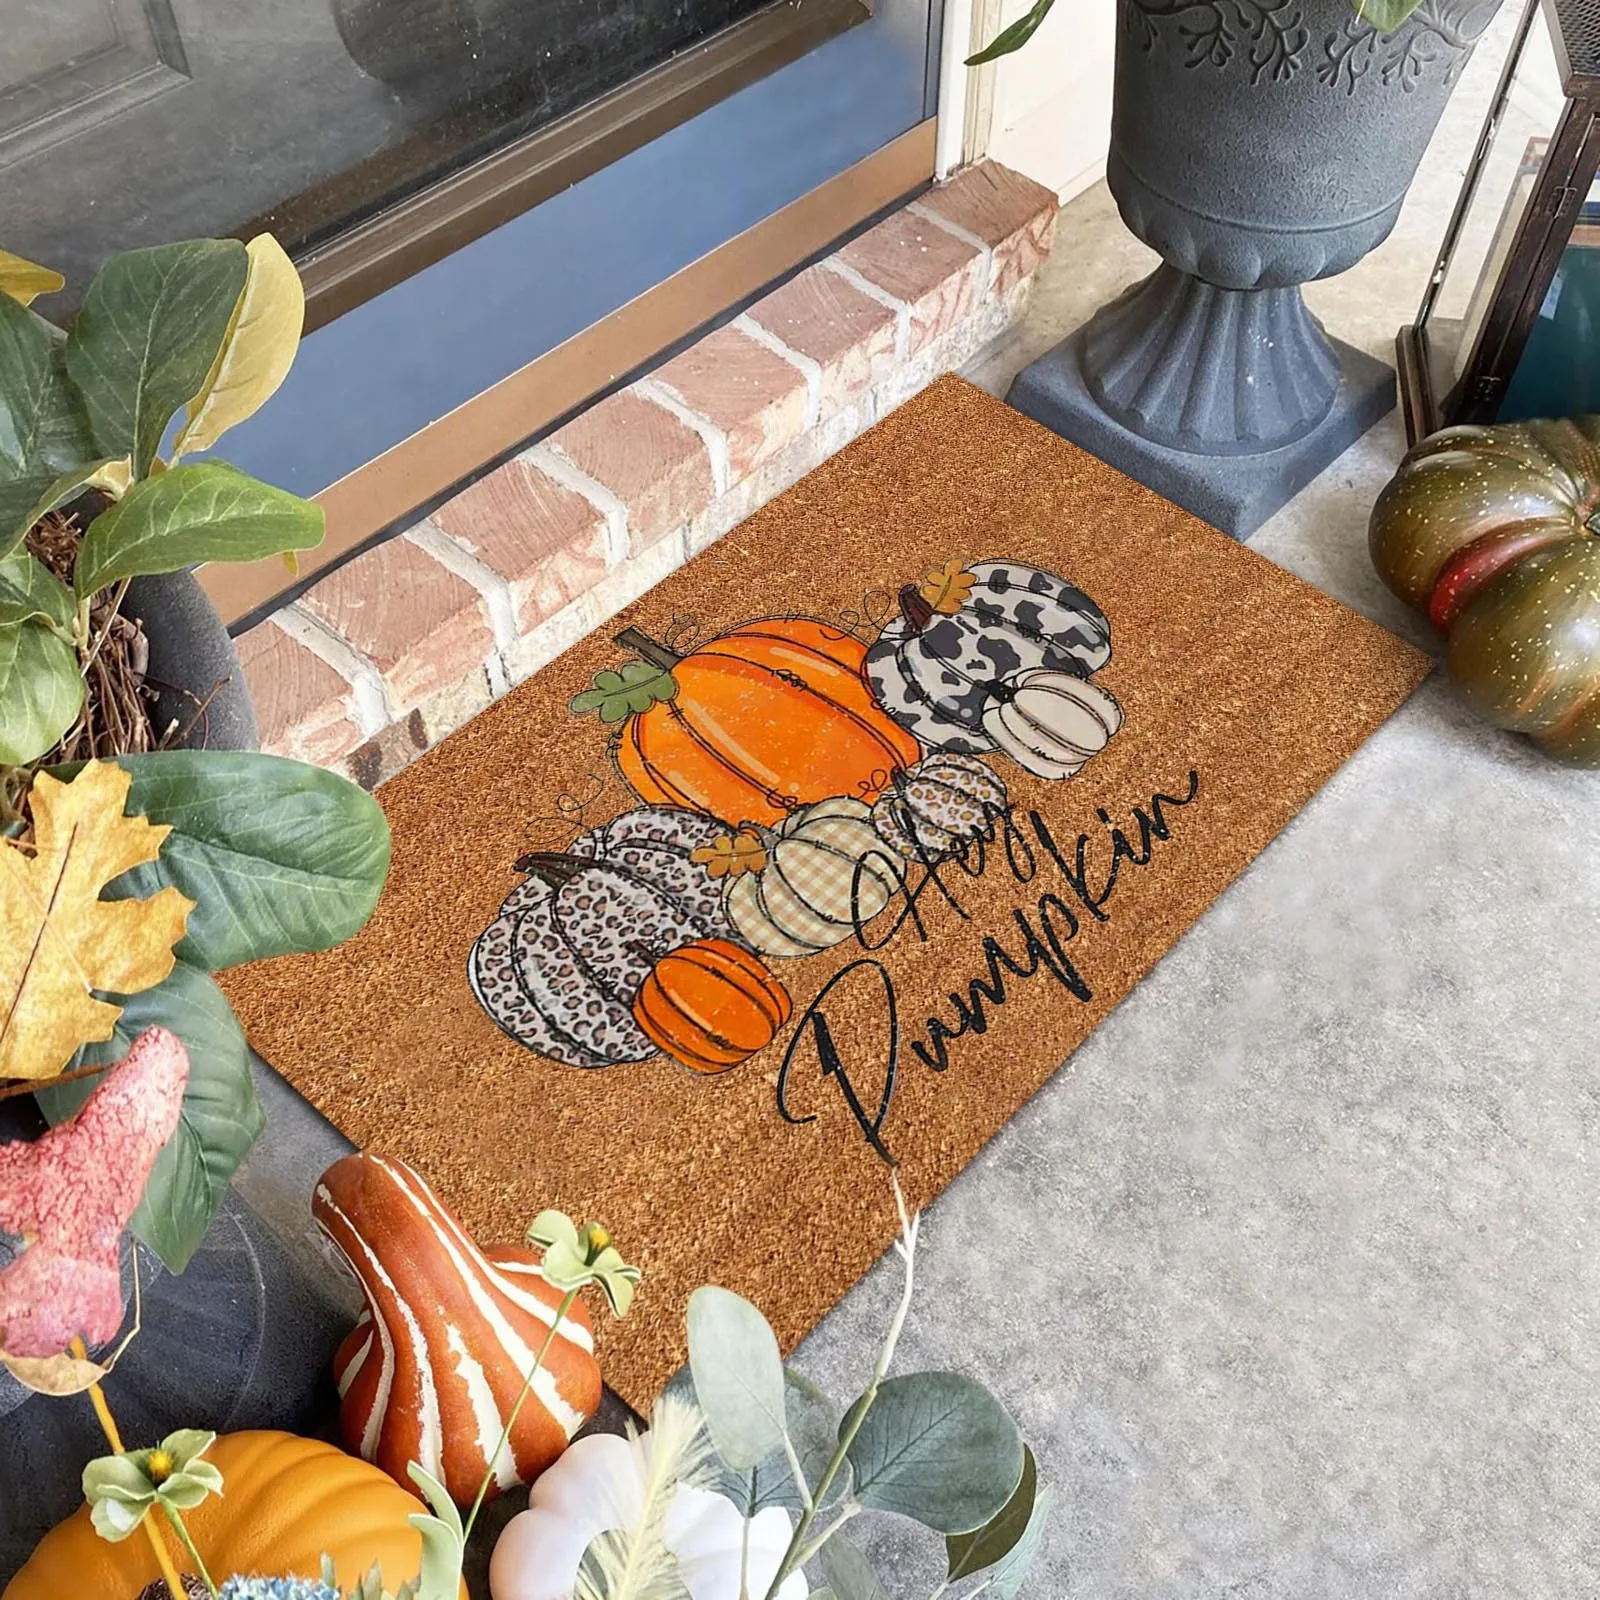 

Thanksgiving Welcome Door Mat Cartoon Pumpkin Faceless Men Pattern Doormat Home kitchen Bathroom Polyester Rugs Carpets